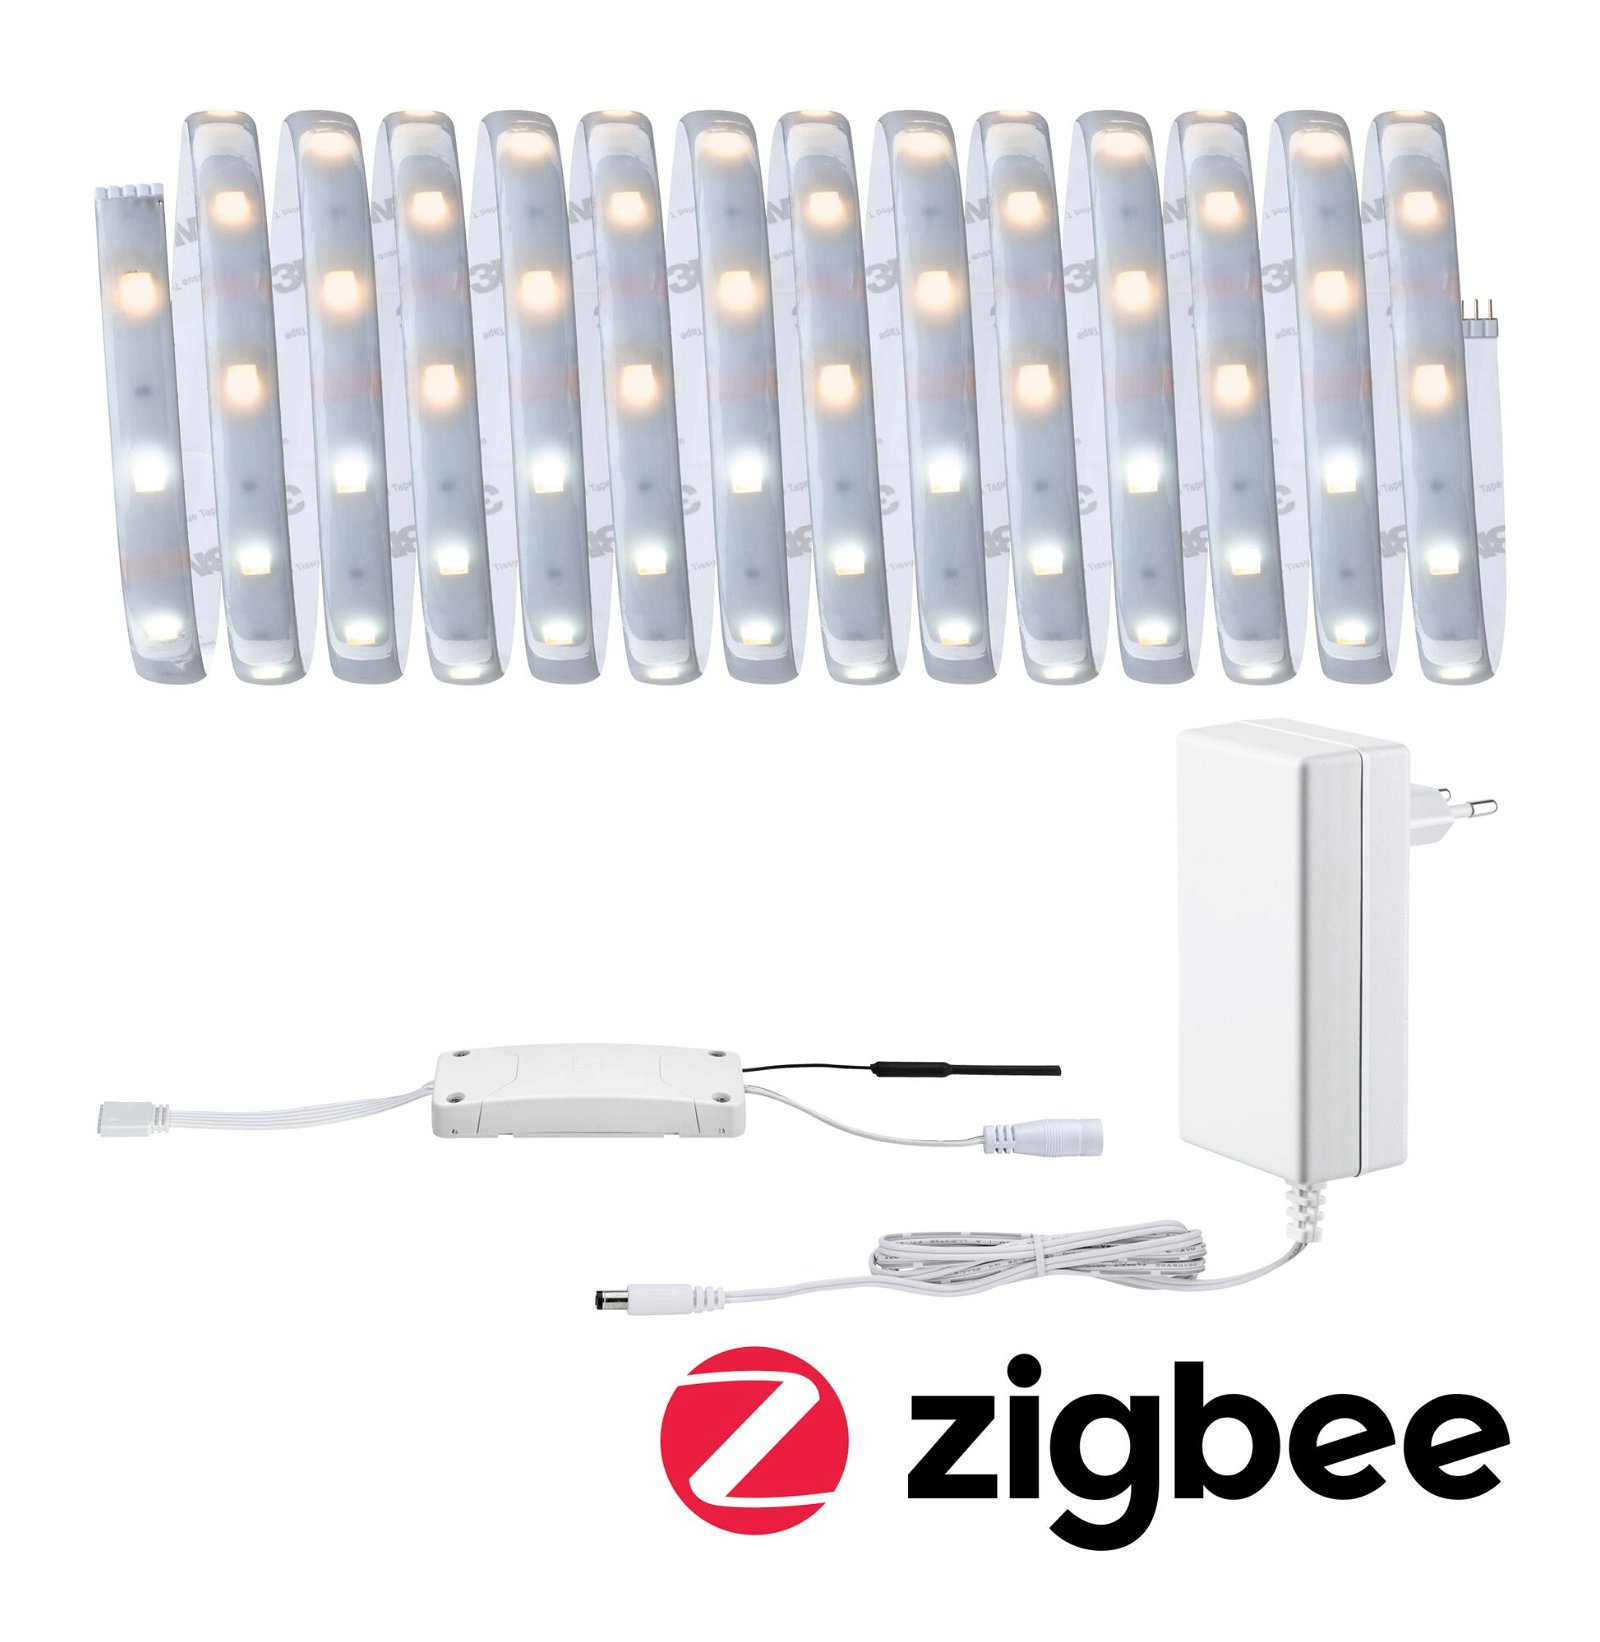 PAULMANN MaxLED 250 LED Strip Smart Home Zigbee měnitelná bílá s krytím základní sada 5m IP44 18W 30LEDs/m měnitelná bílá 36VA